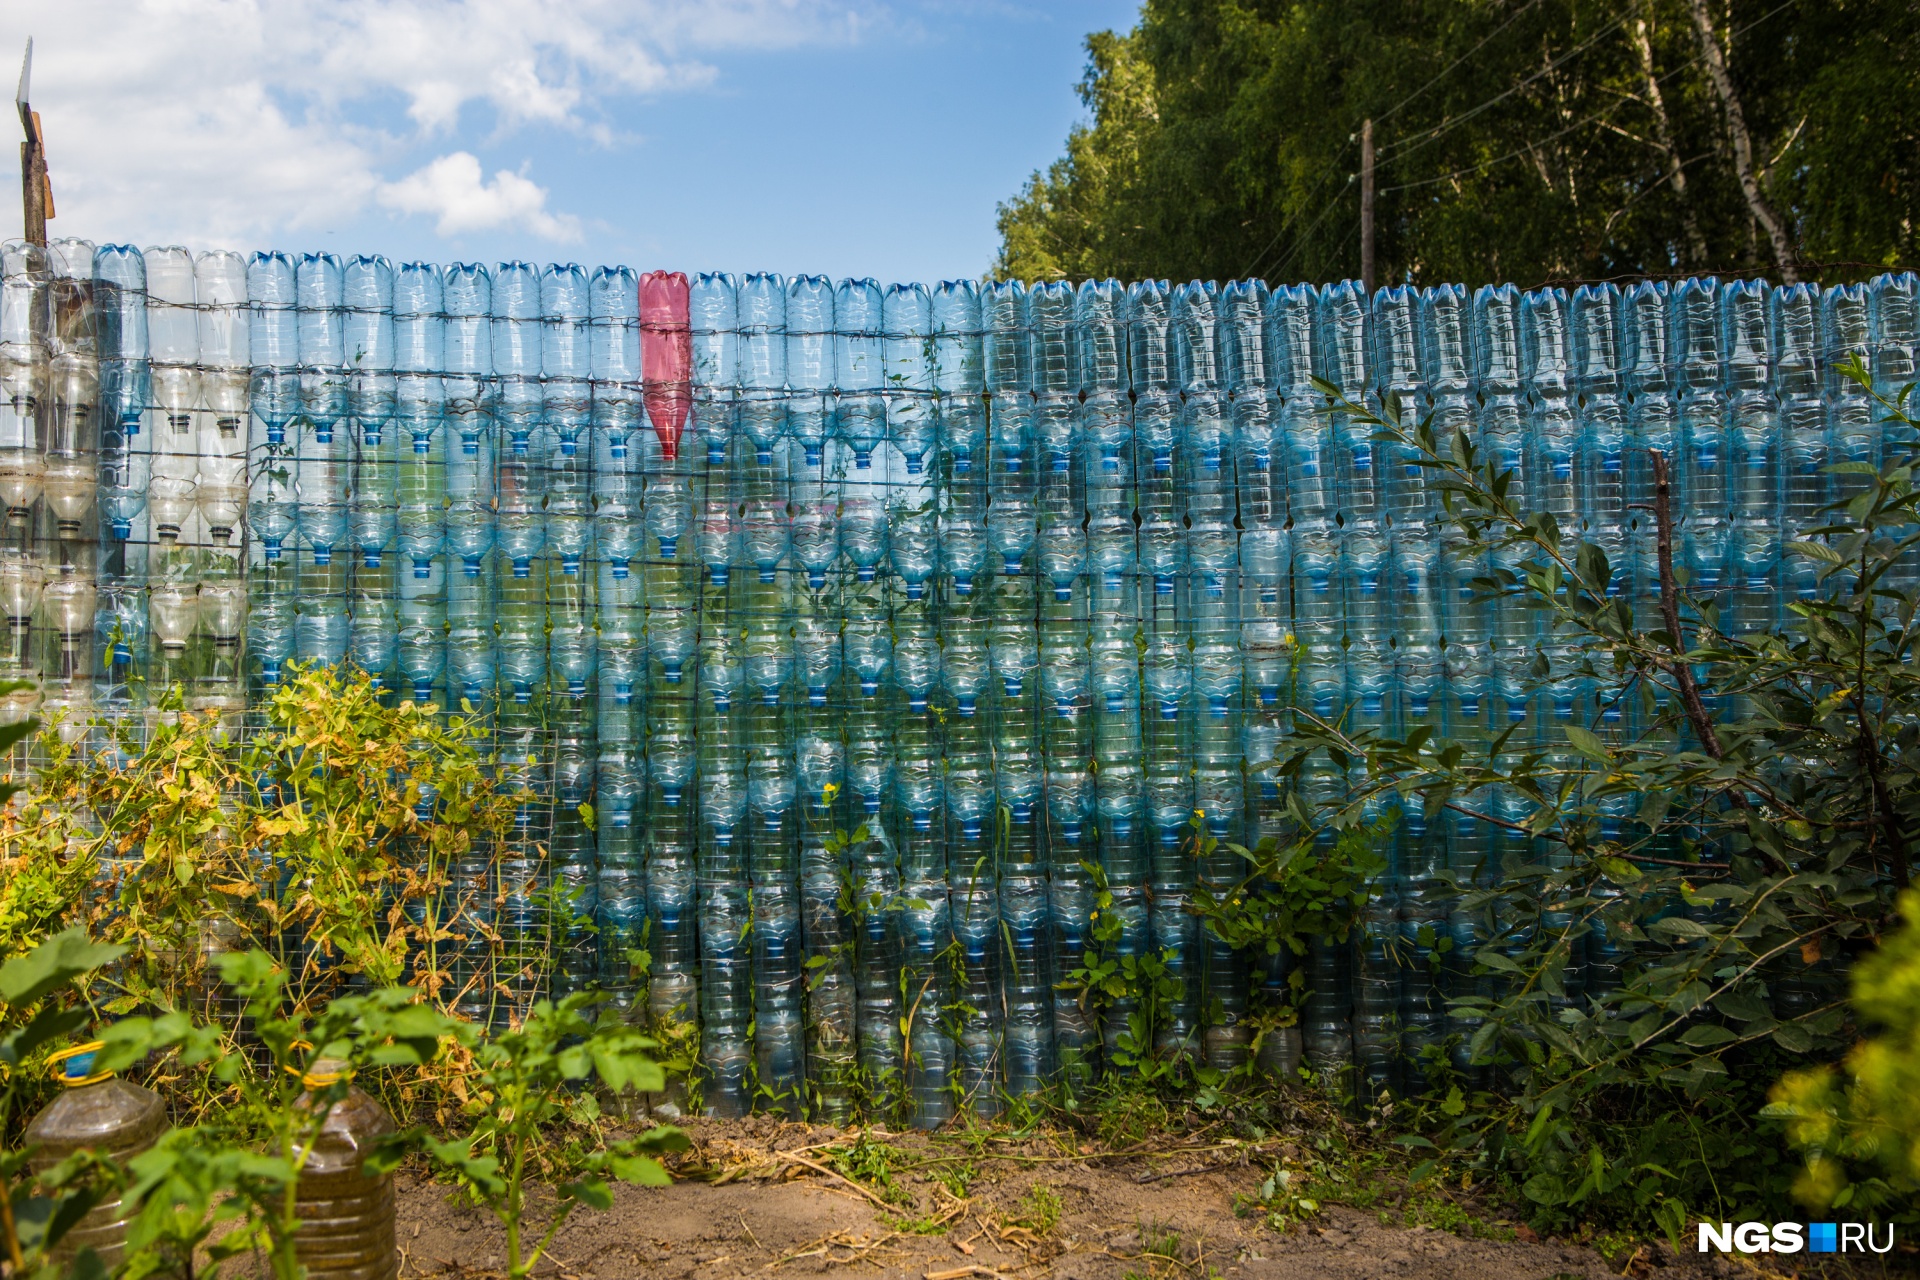 Делаем забор из пластиковых бутылок своими руками строительство и ремонт забора